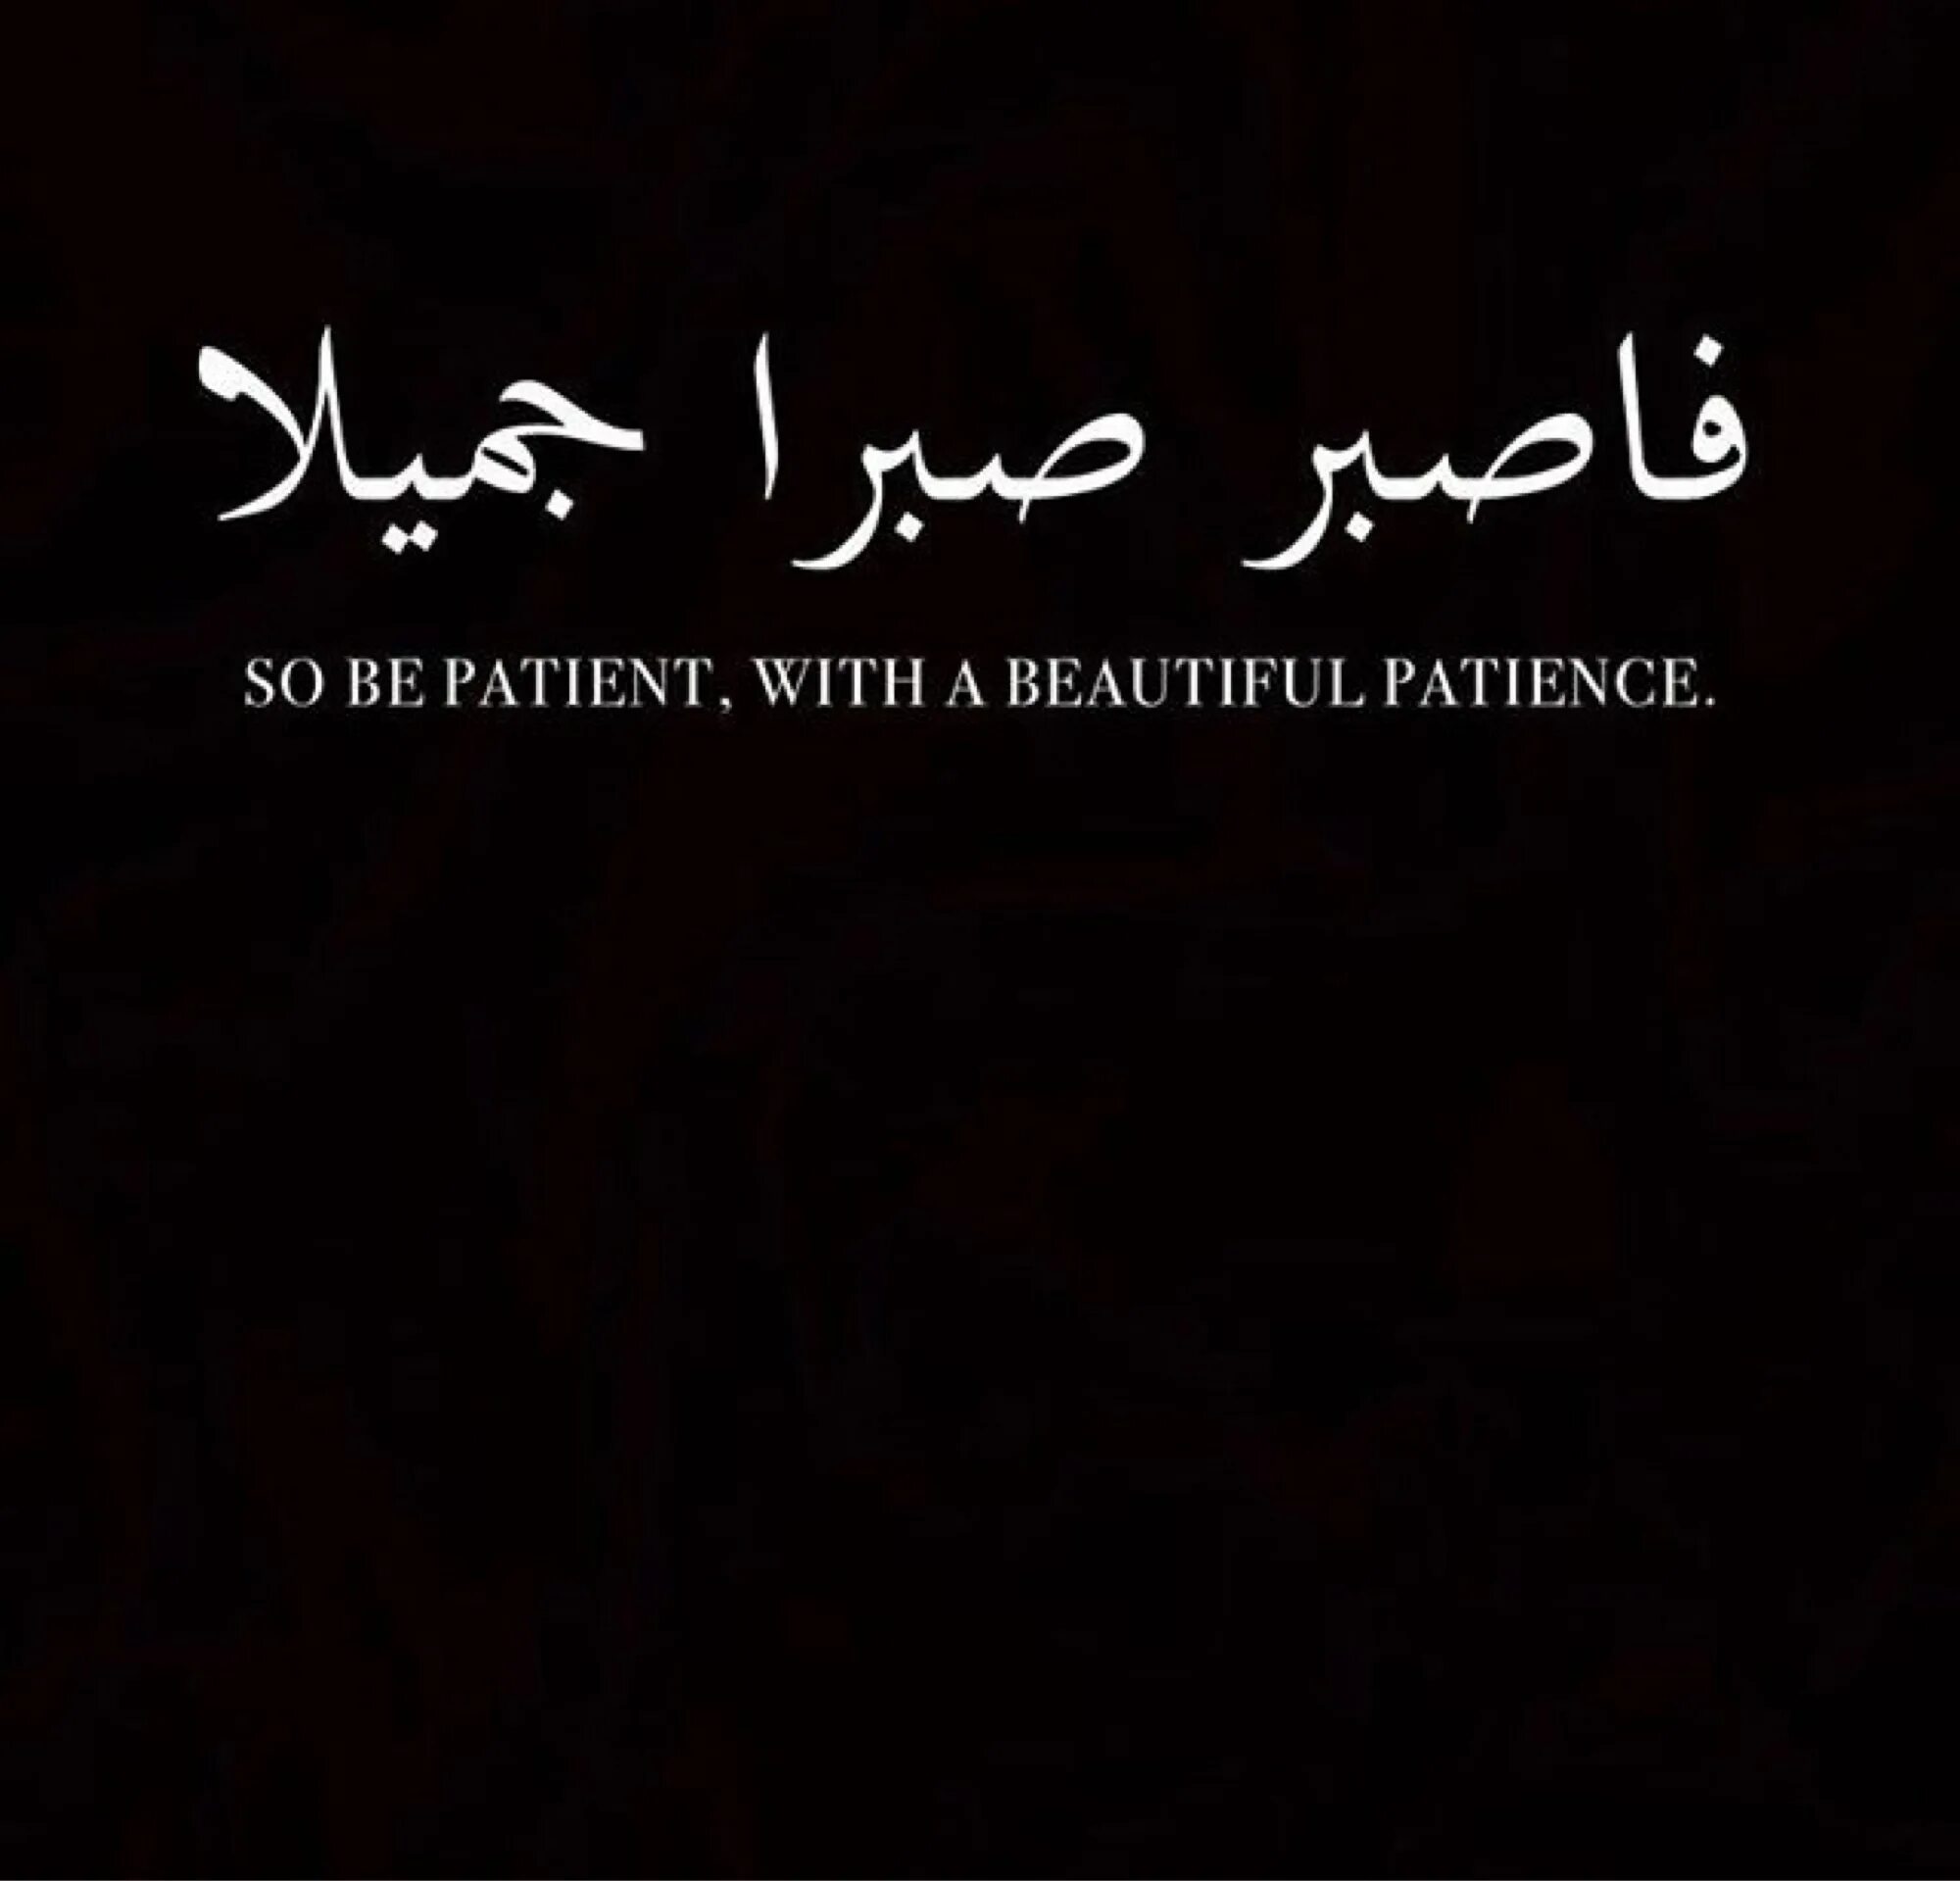 Арабские цитаты. Цитаты на арабском языке. Красивые слова на арабском. Исламские цитаты на арабском. Прояви же красивое